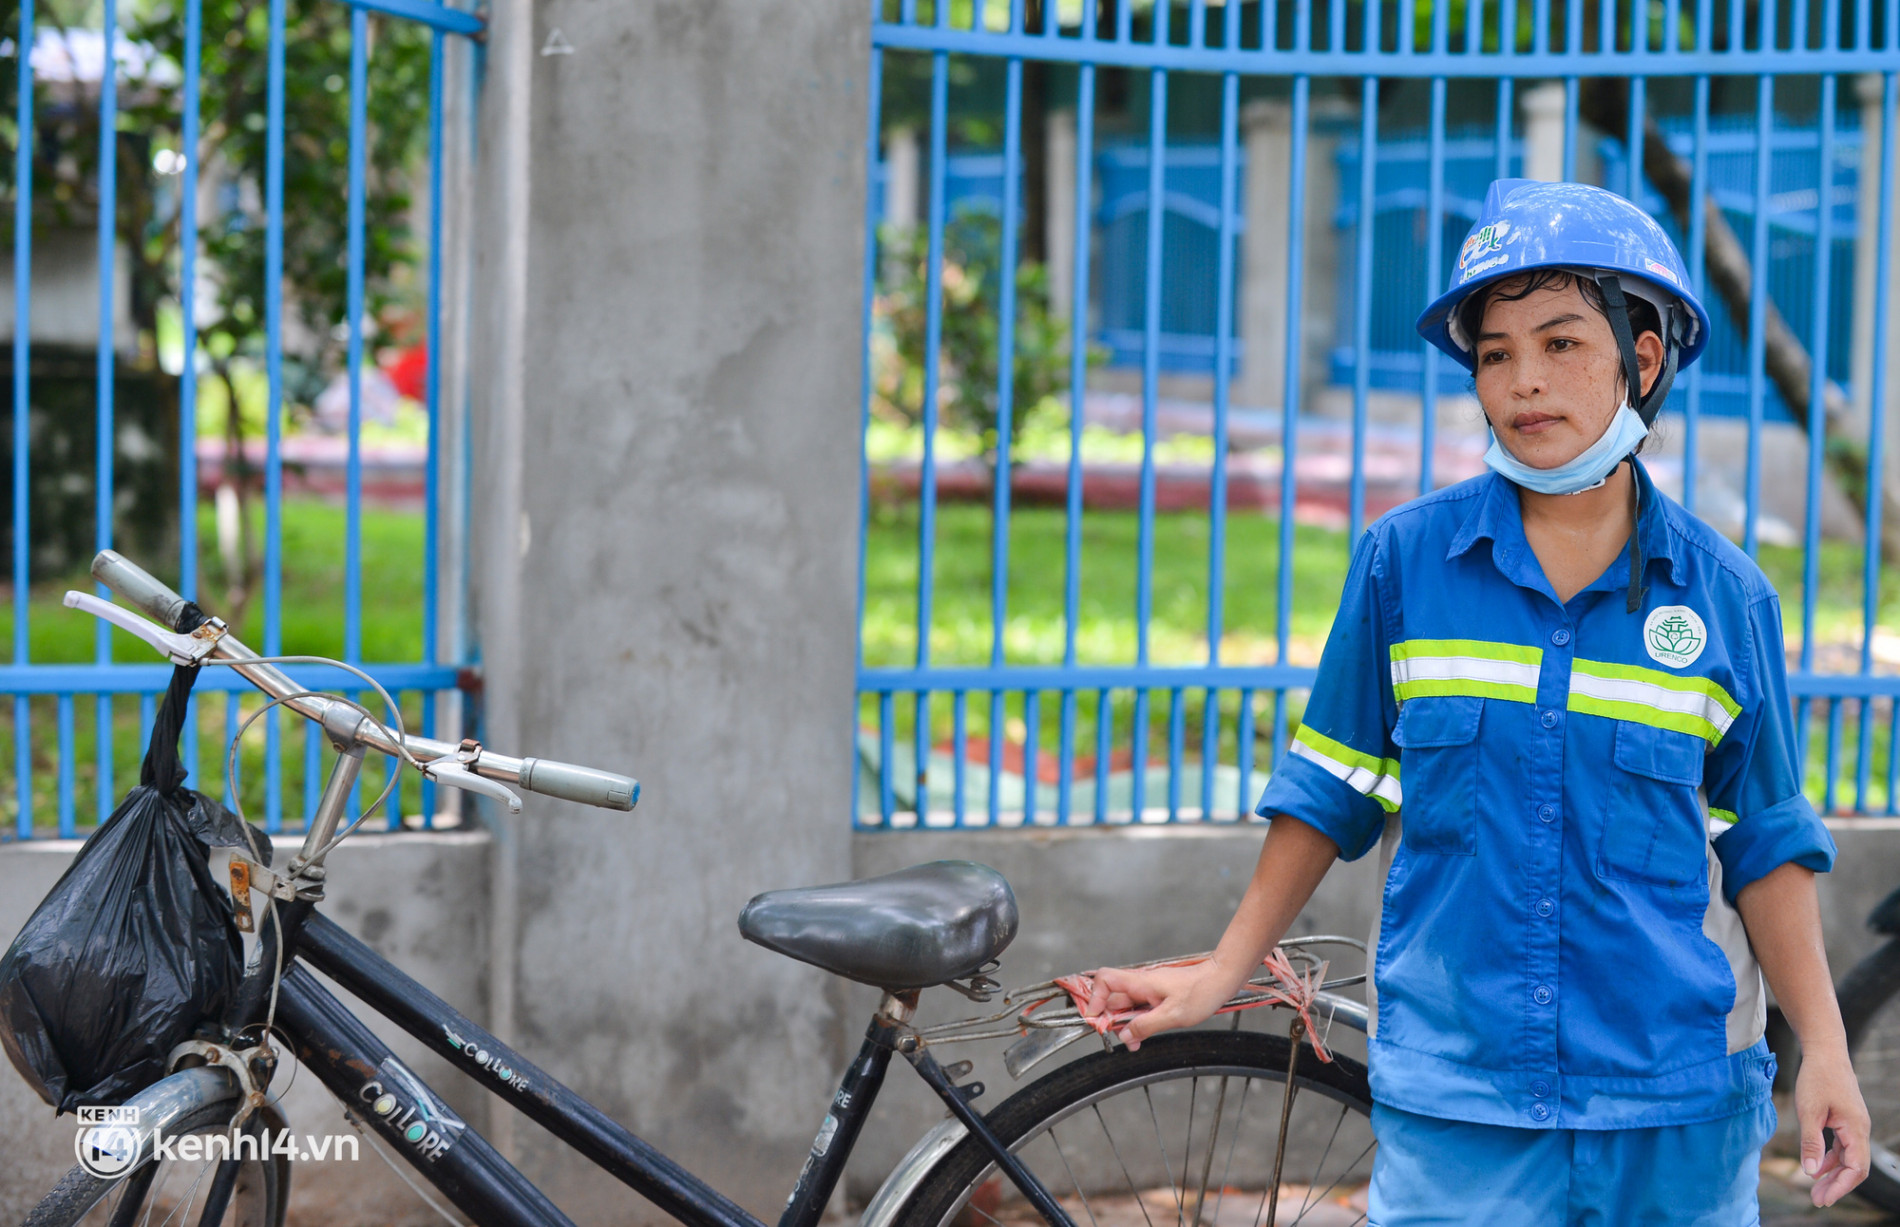 Nụ cười trở lại với những công nhân môi trường bị nợ lương ở Hà Nội: Đi làm vào ngày Tết được người dân chúc mừng, lì xì cũng hạnh phúc lắm - Ảnh 3.